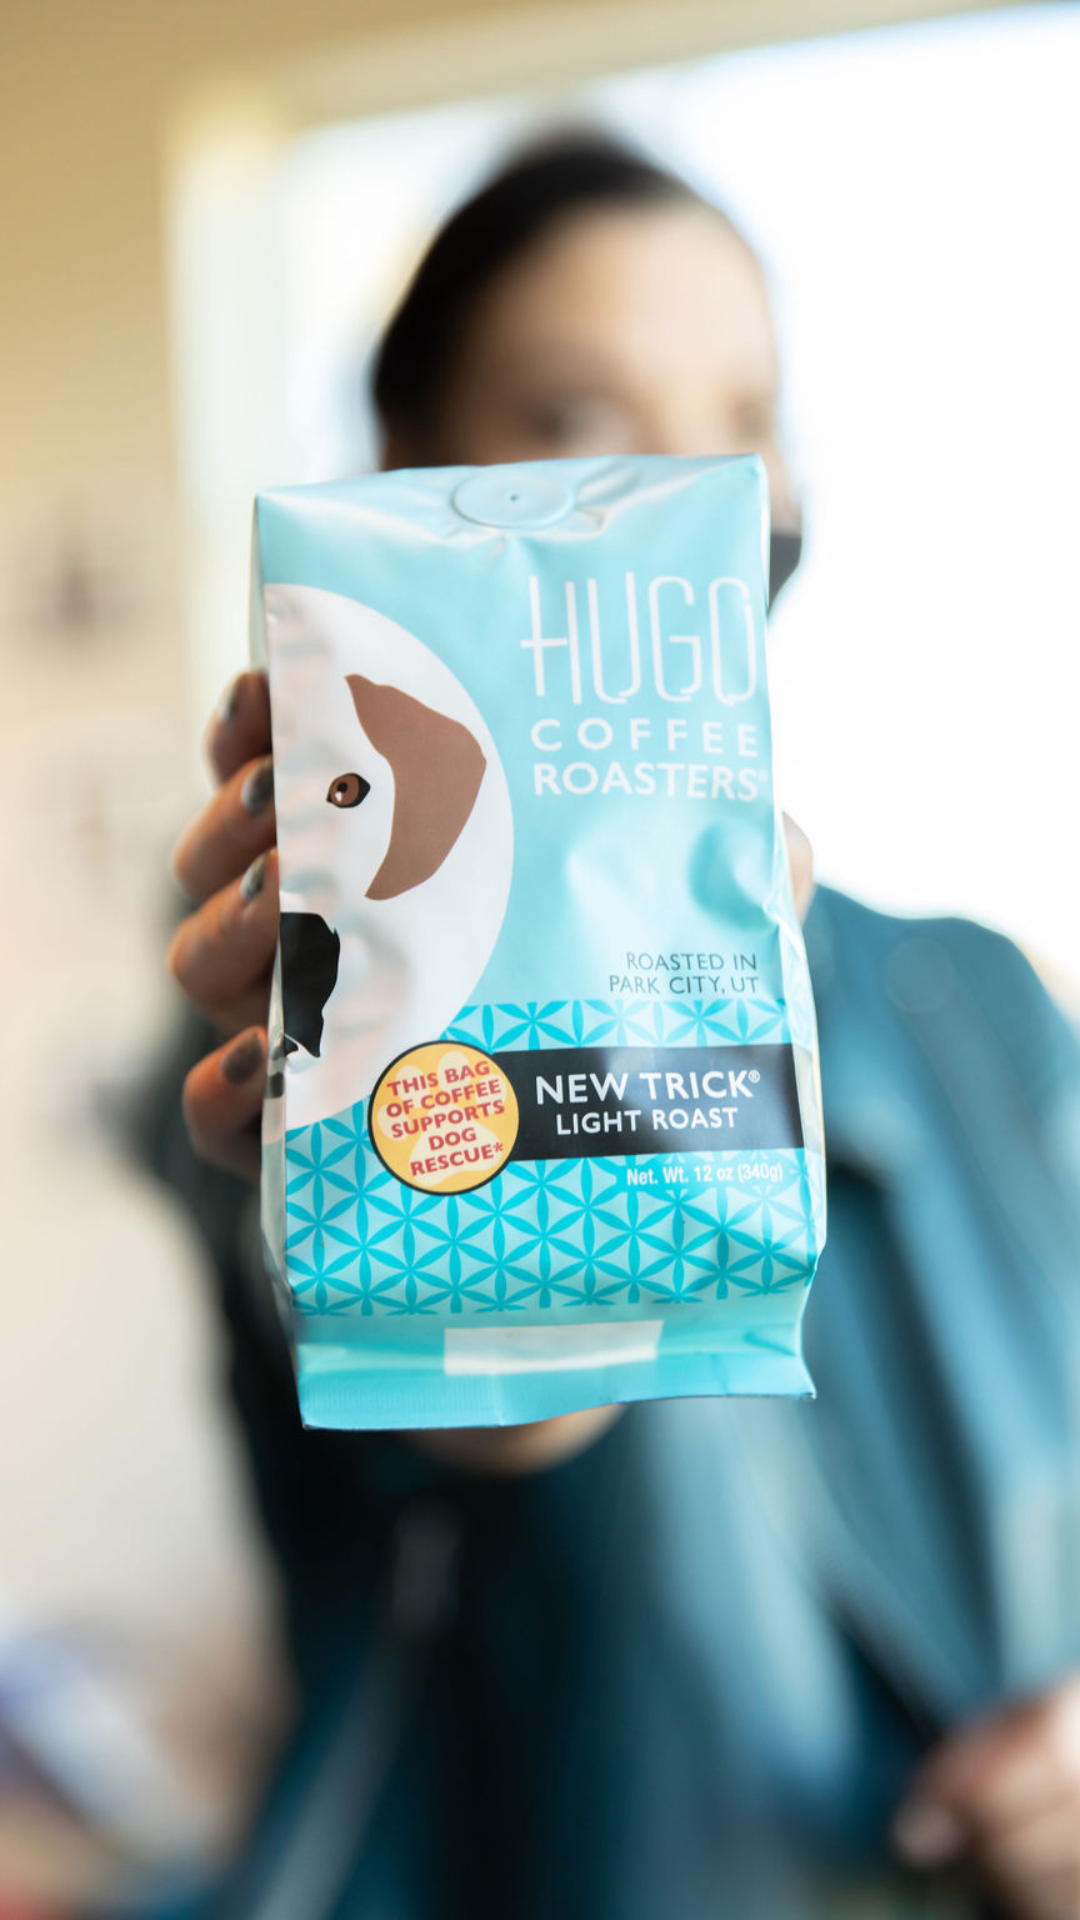 New-Trick-Light-Roast- hugo-coffee-roasters